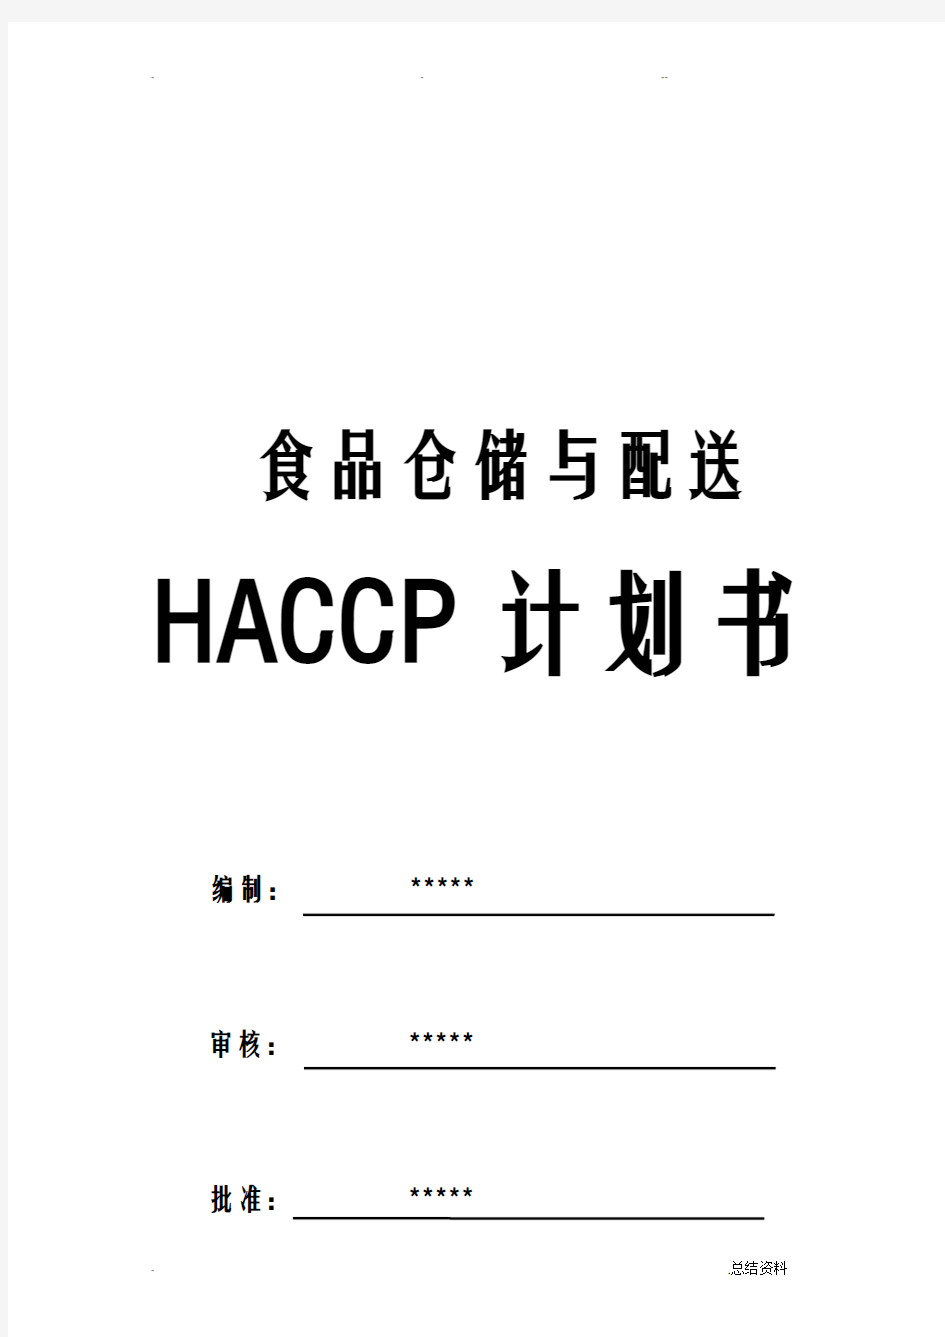 食品配送仓储企业HACCP计划